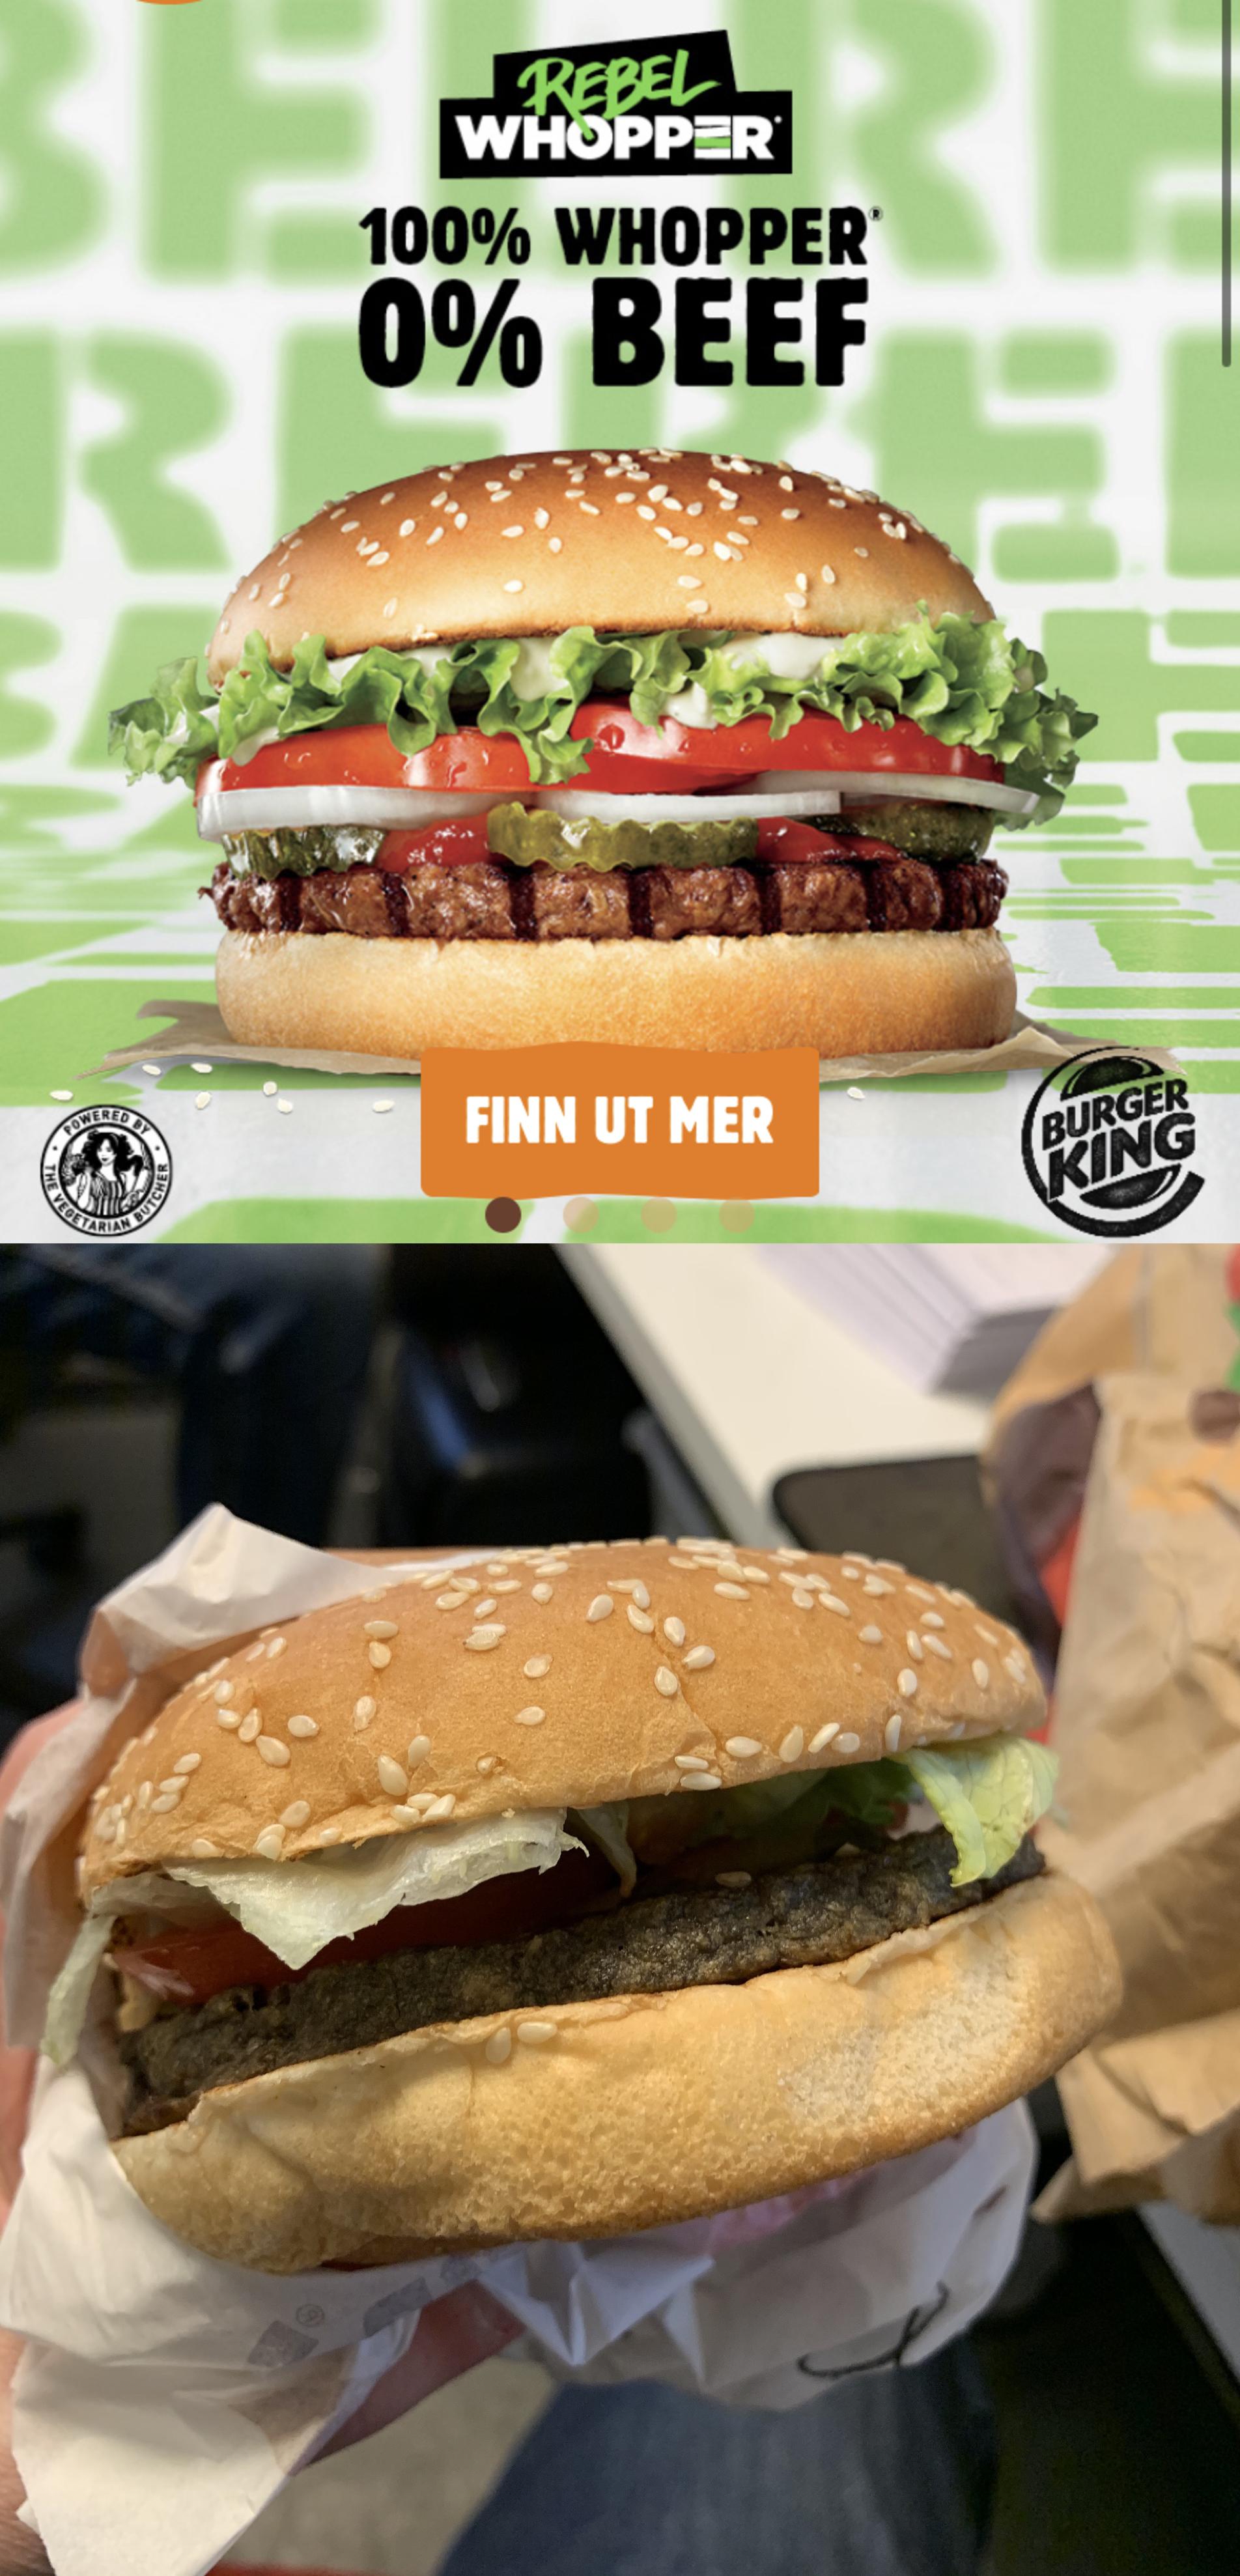 fast food - Whoppar 100% Whopper 0% Beef Finn Ut Mer